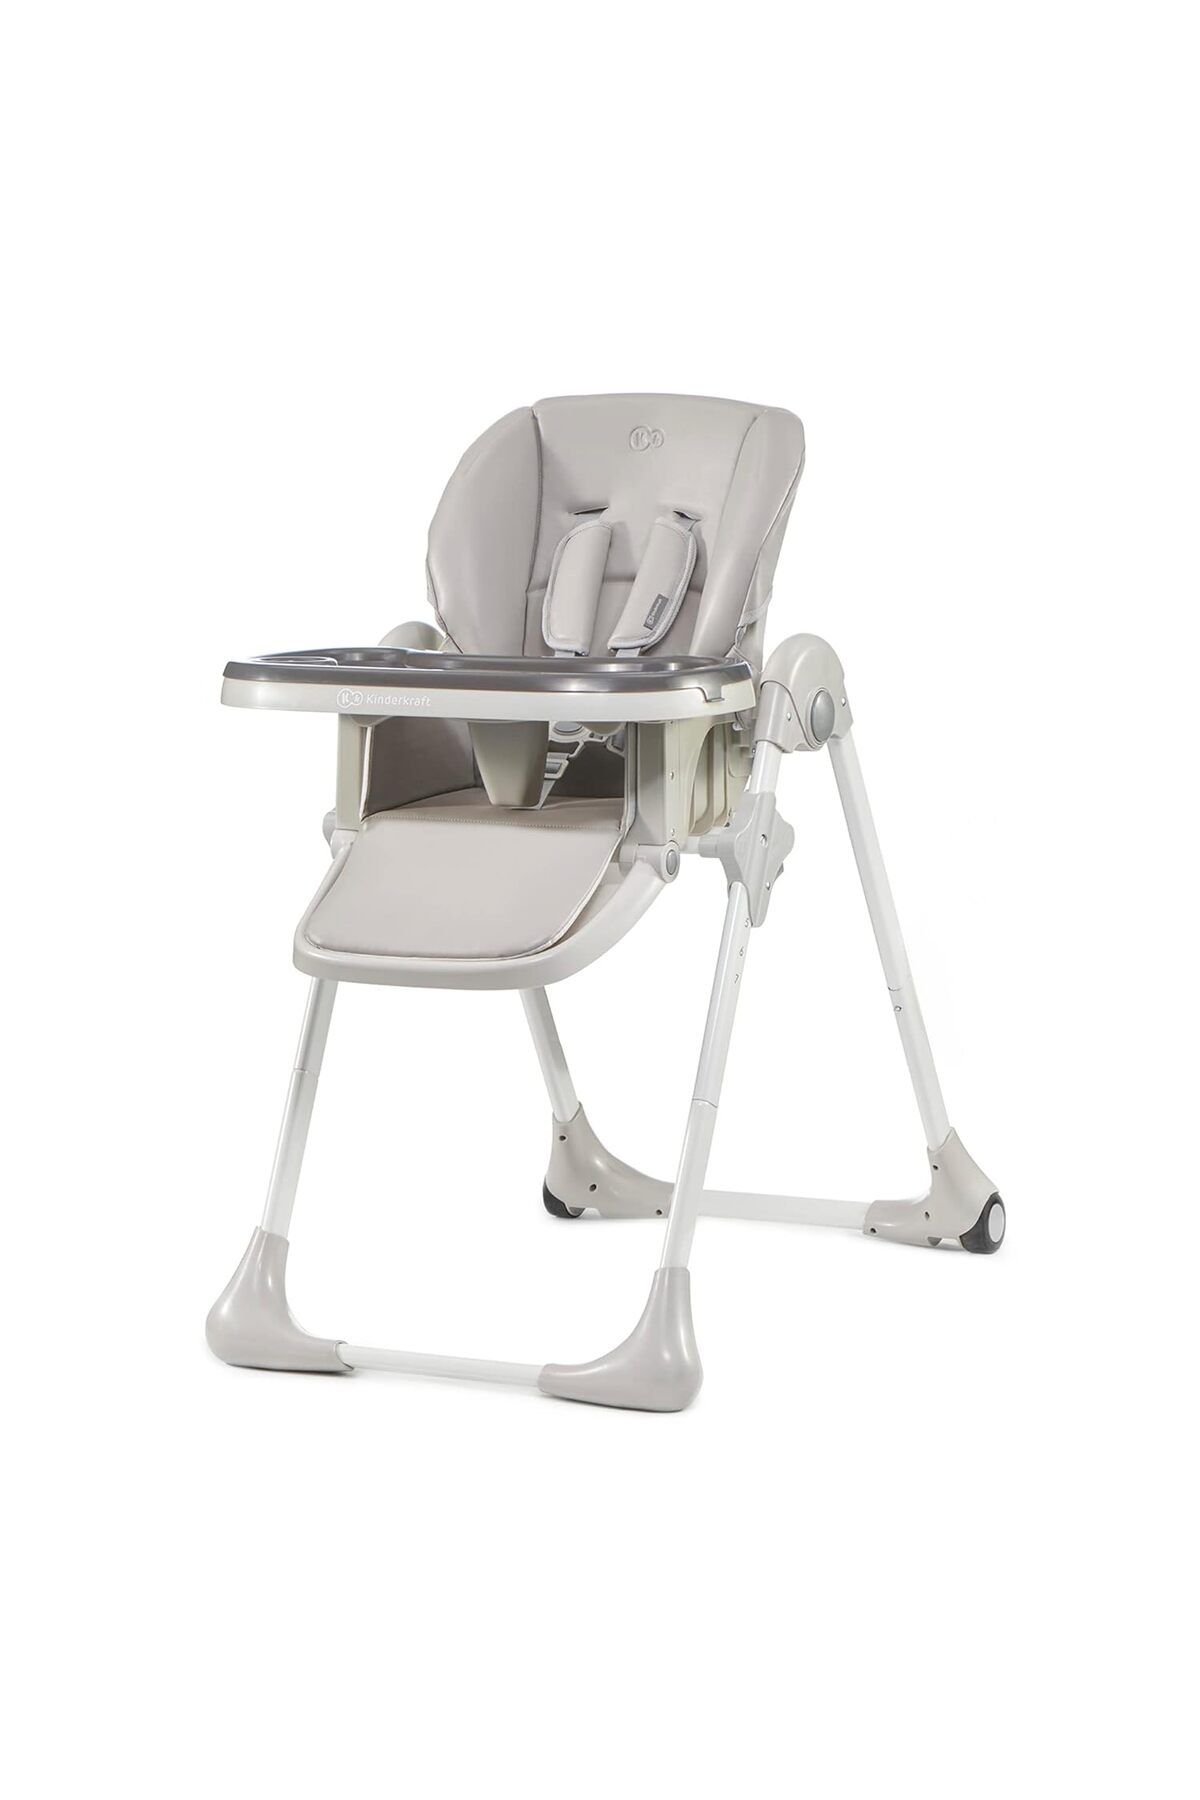 kinderkraft Mama sandalyesi,ayak desteği, yarım yatma pozisyonu, poliüretan kılıf, kolay temizlenir,